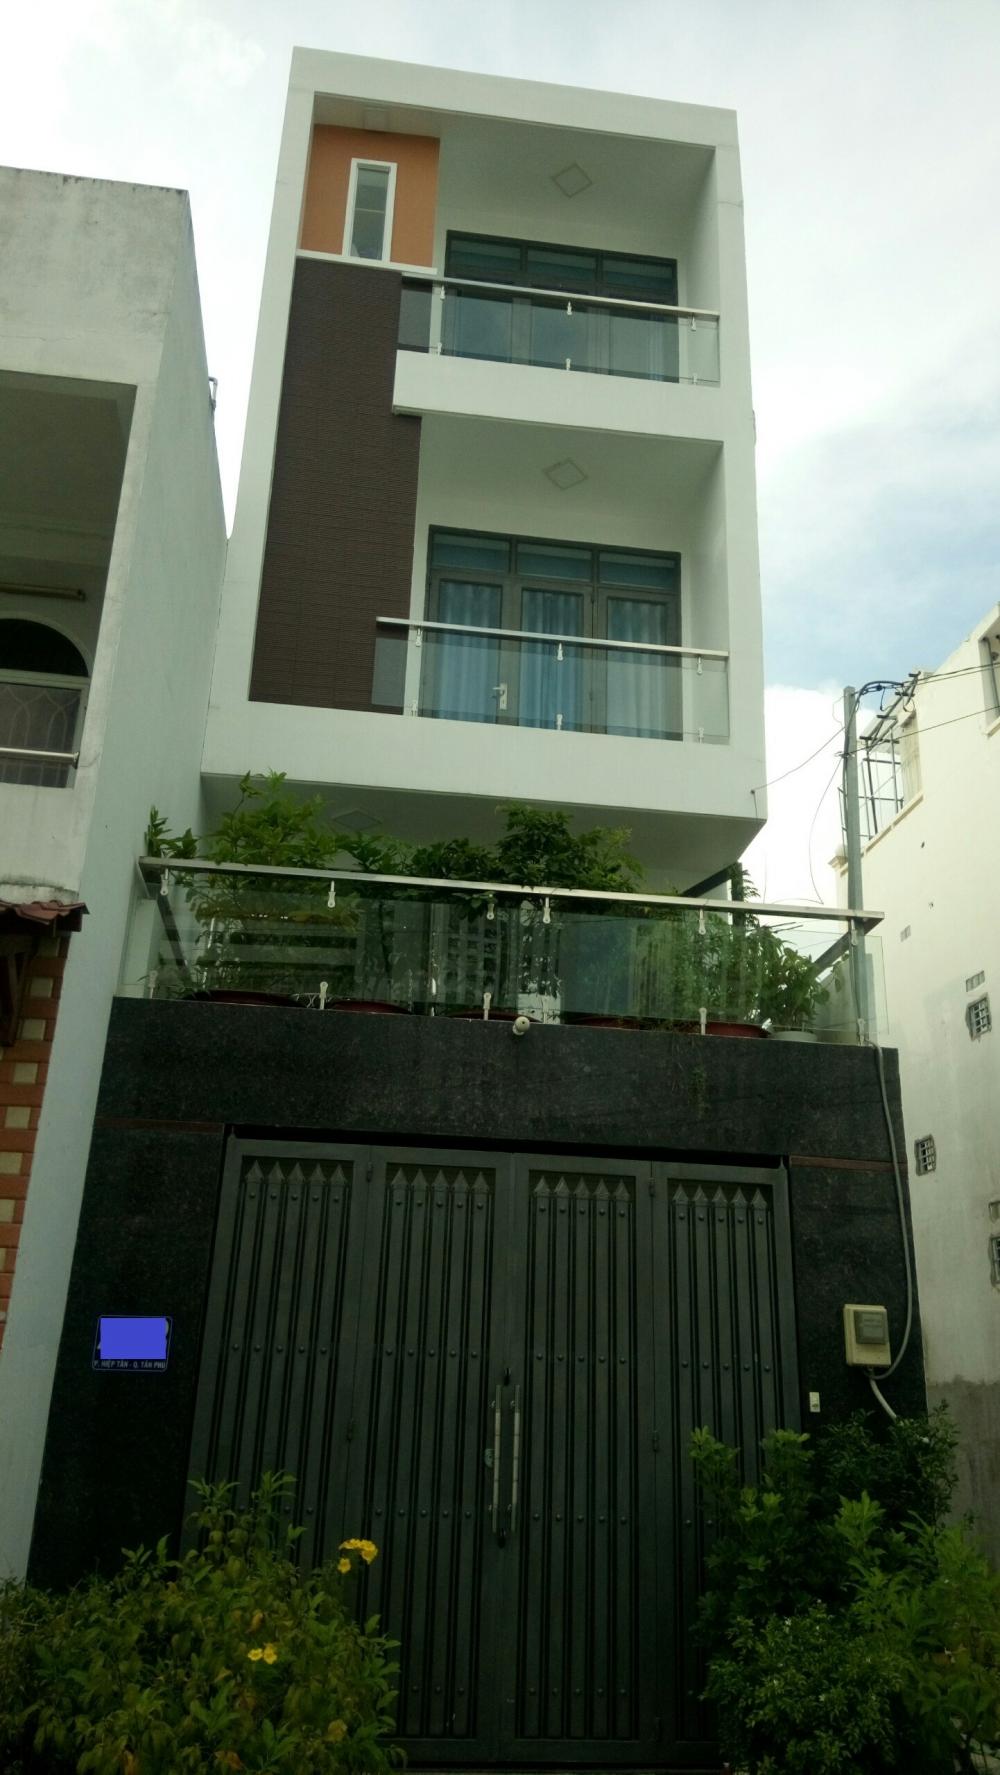 Bán nhà mới H8m Phan Anh, DT: 4x12m, 1 trệt, 1 lửng, 2 lầu, giá 5.5 tỷ